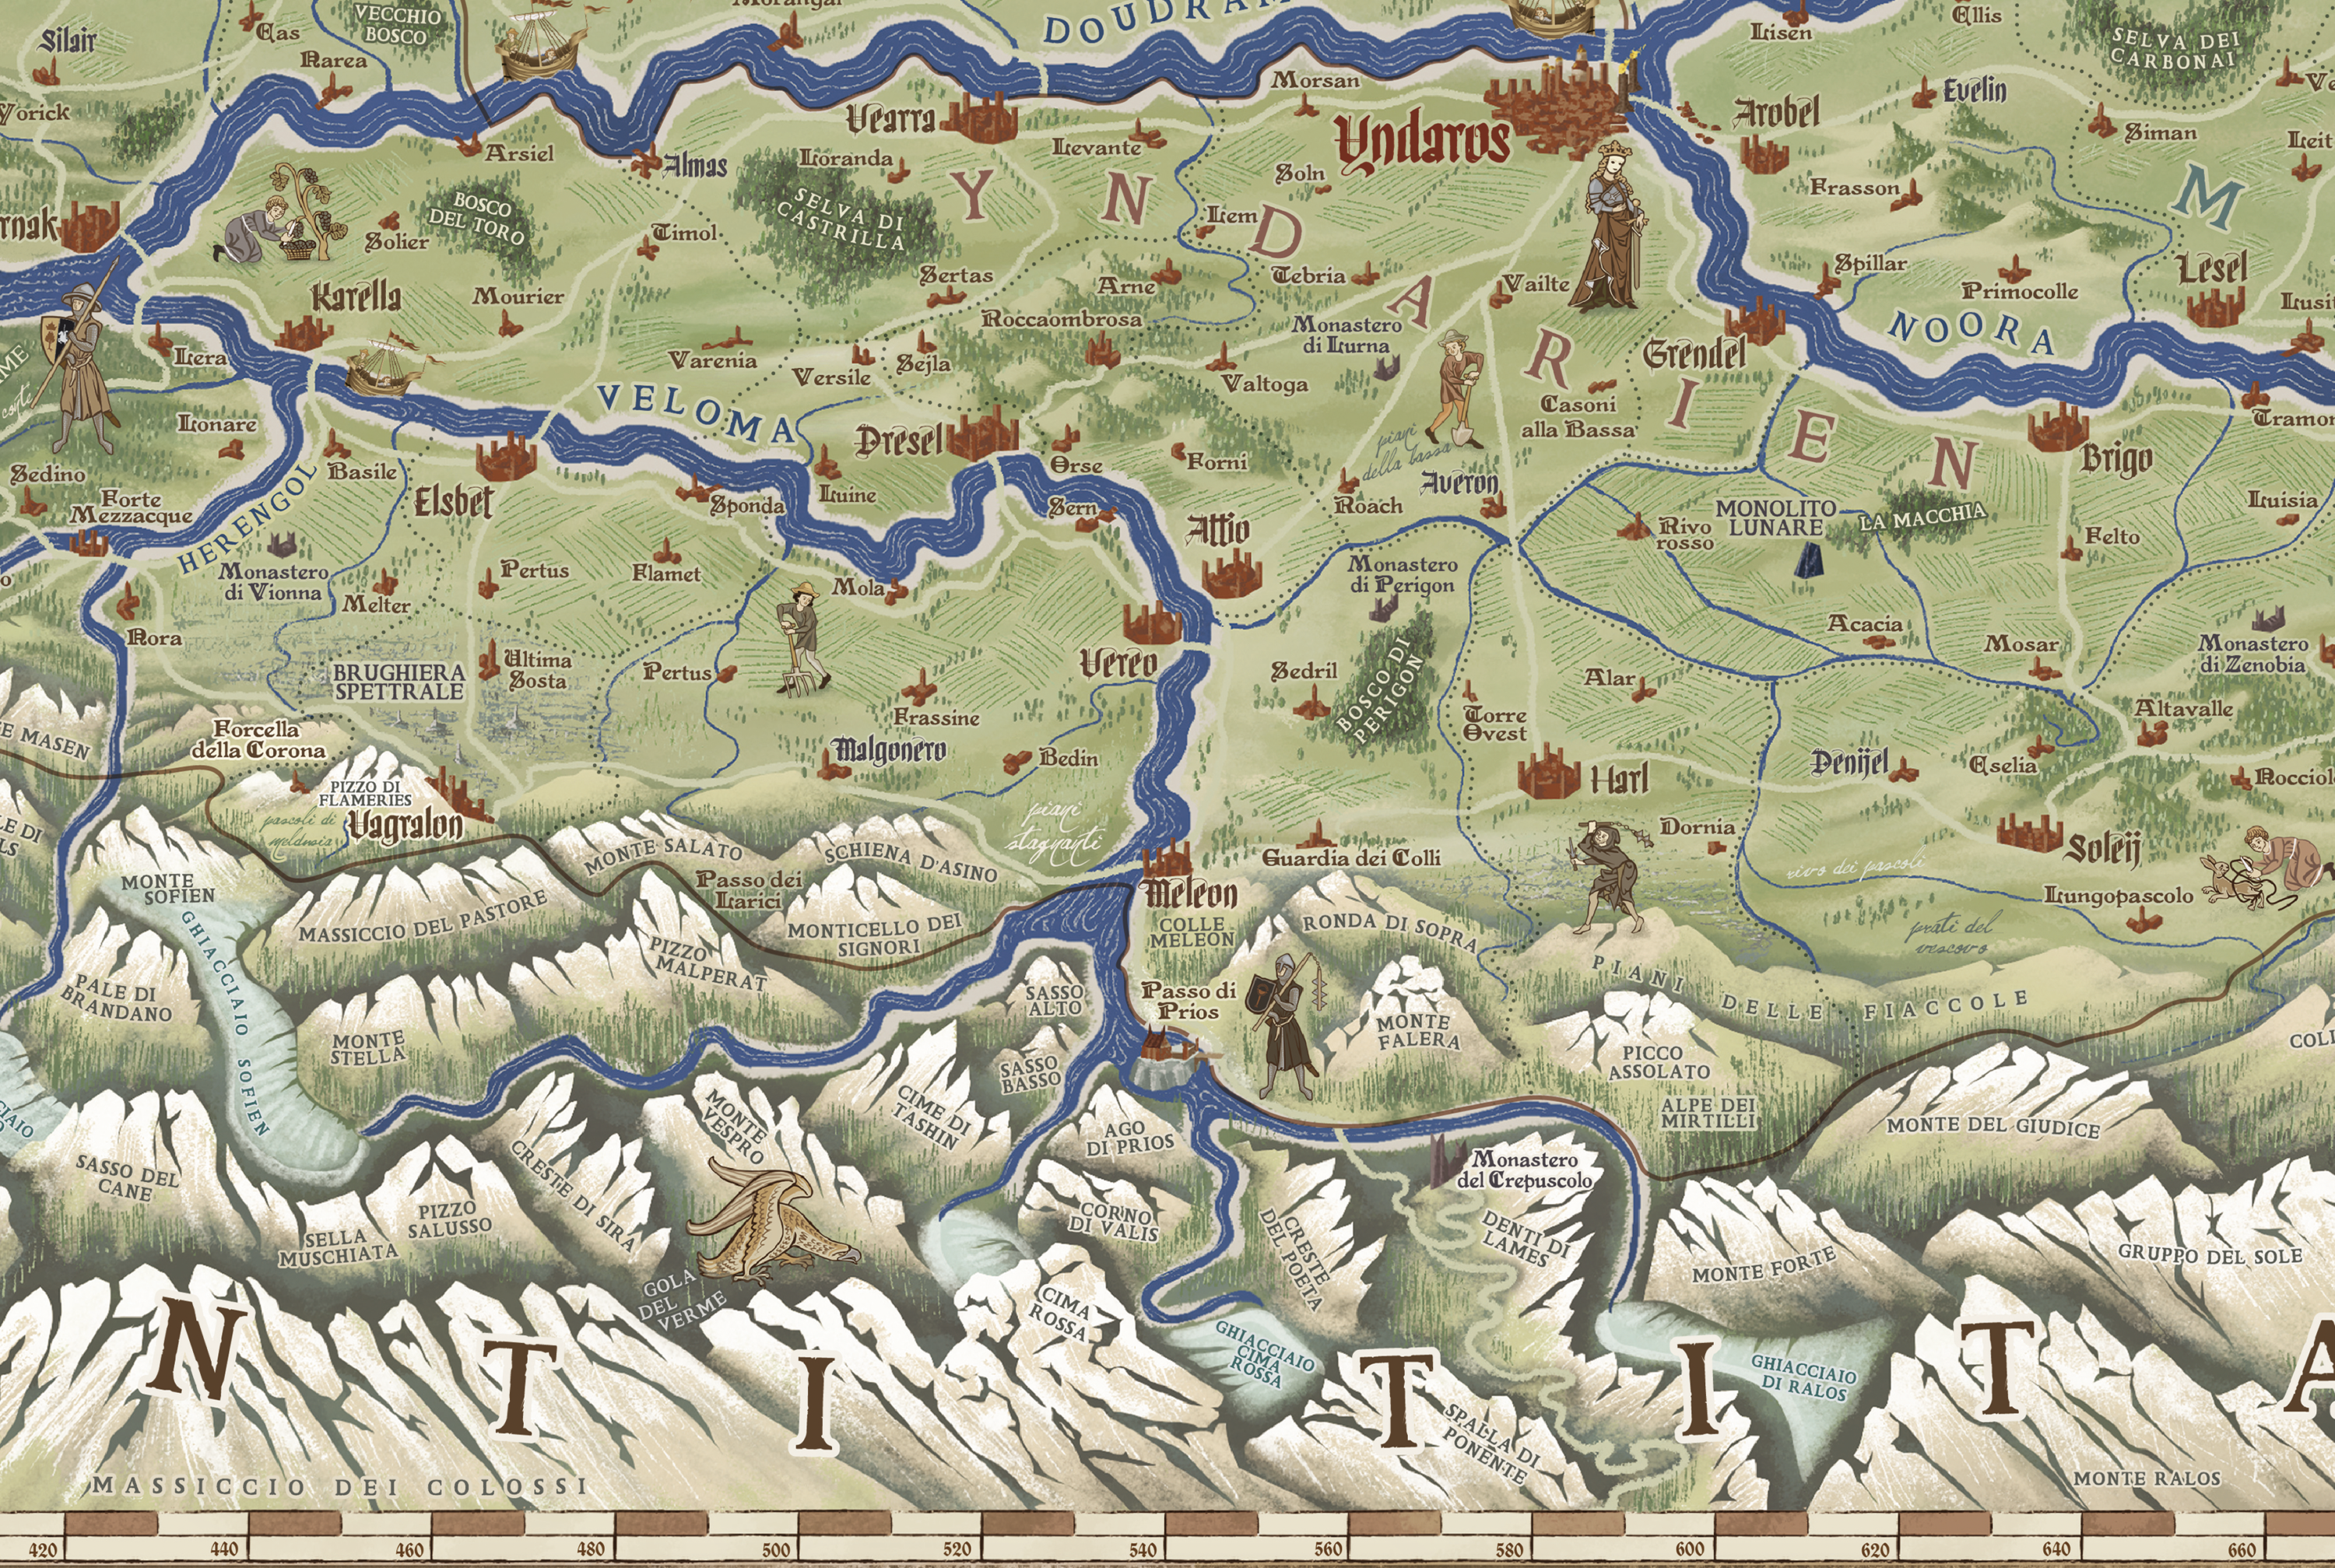 Mappa regno Ambria Symbaroum  dettagliata in scala a colori disegnata a mano in stile medievale con araldica e regioni del Regno di Ambria - fanart del gioco di Ruolo Symbaroum - particolare della provincia di Yndarien